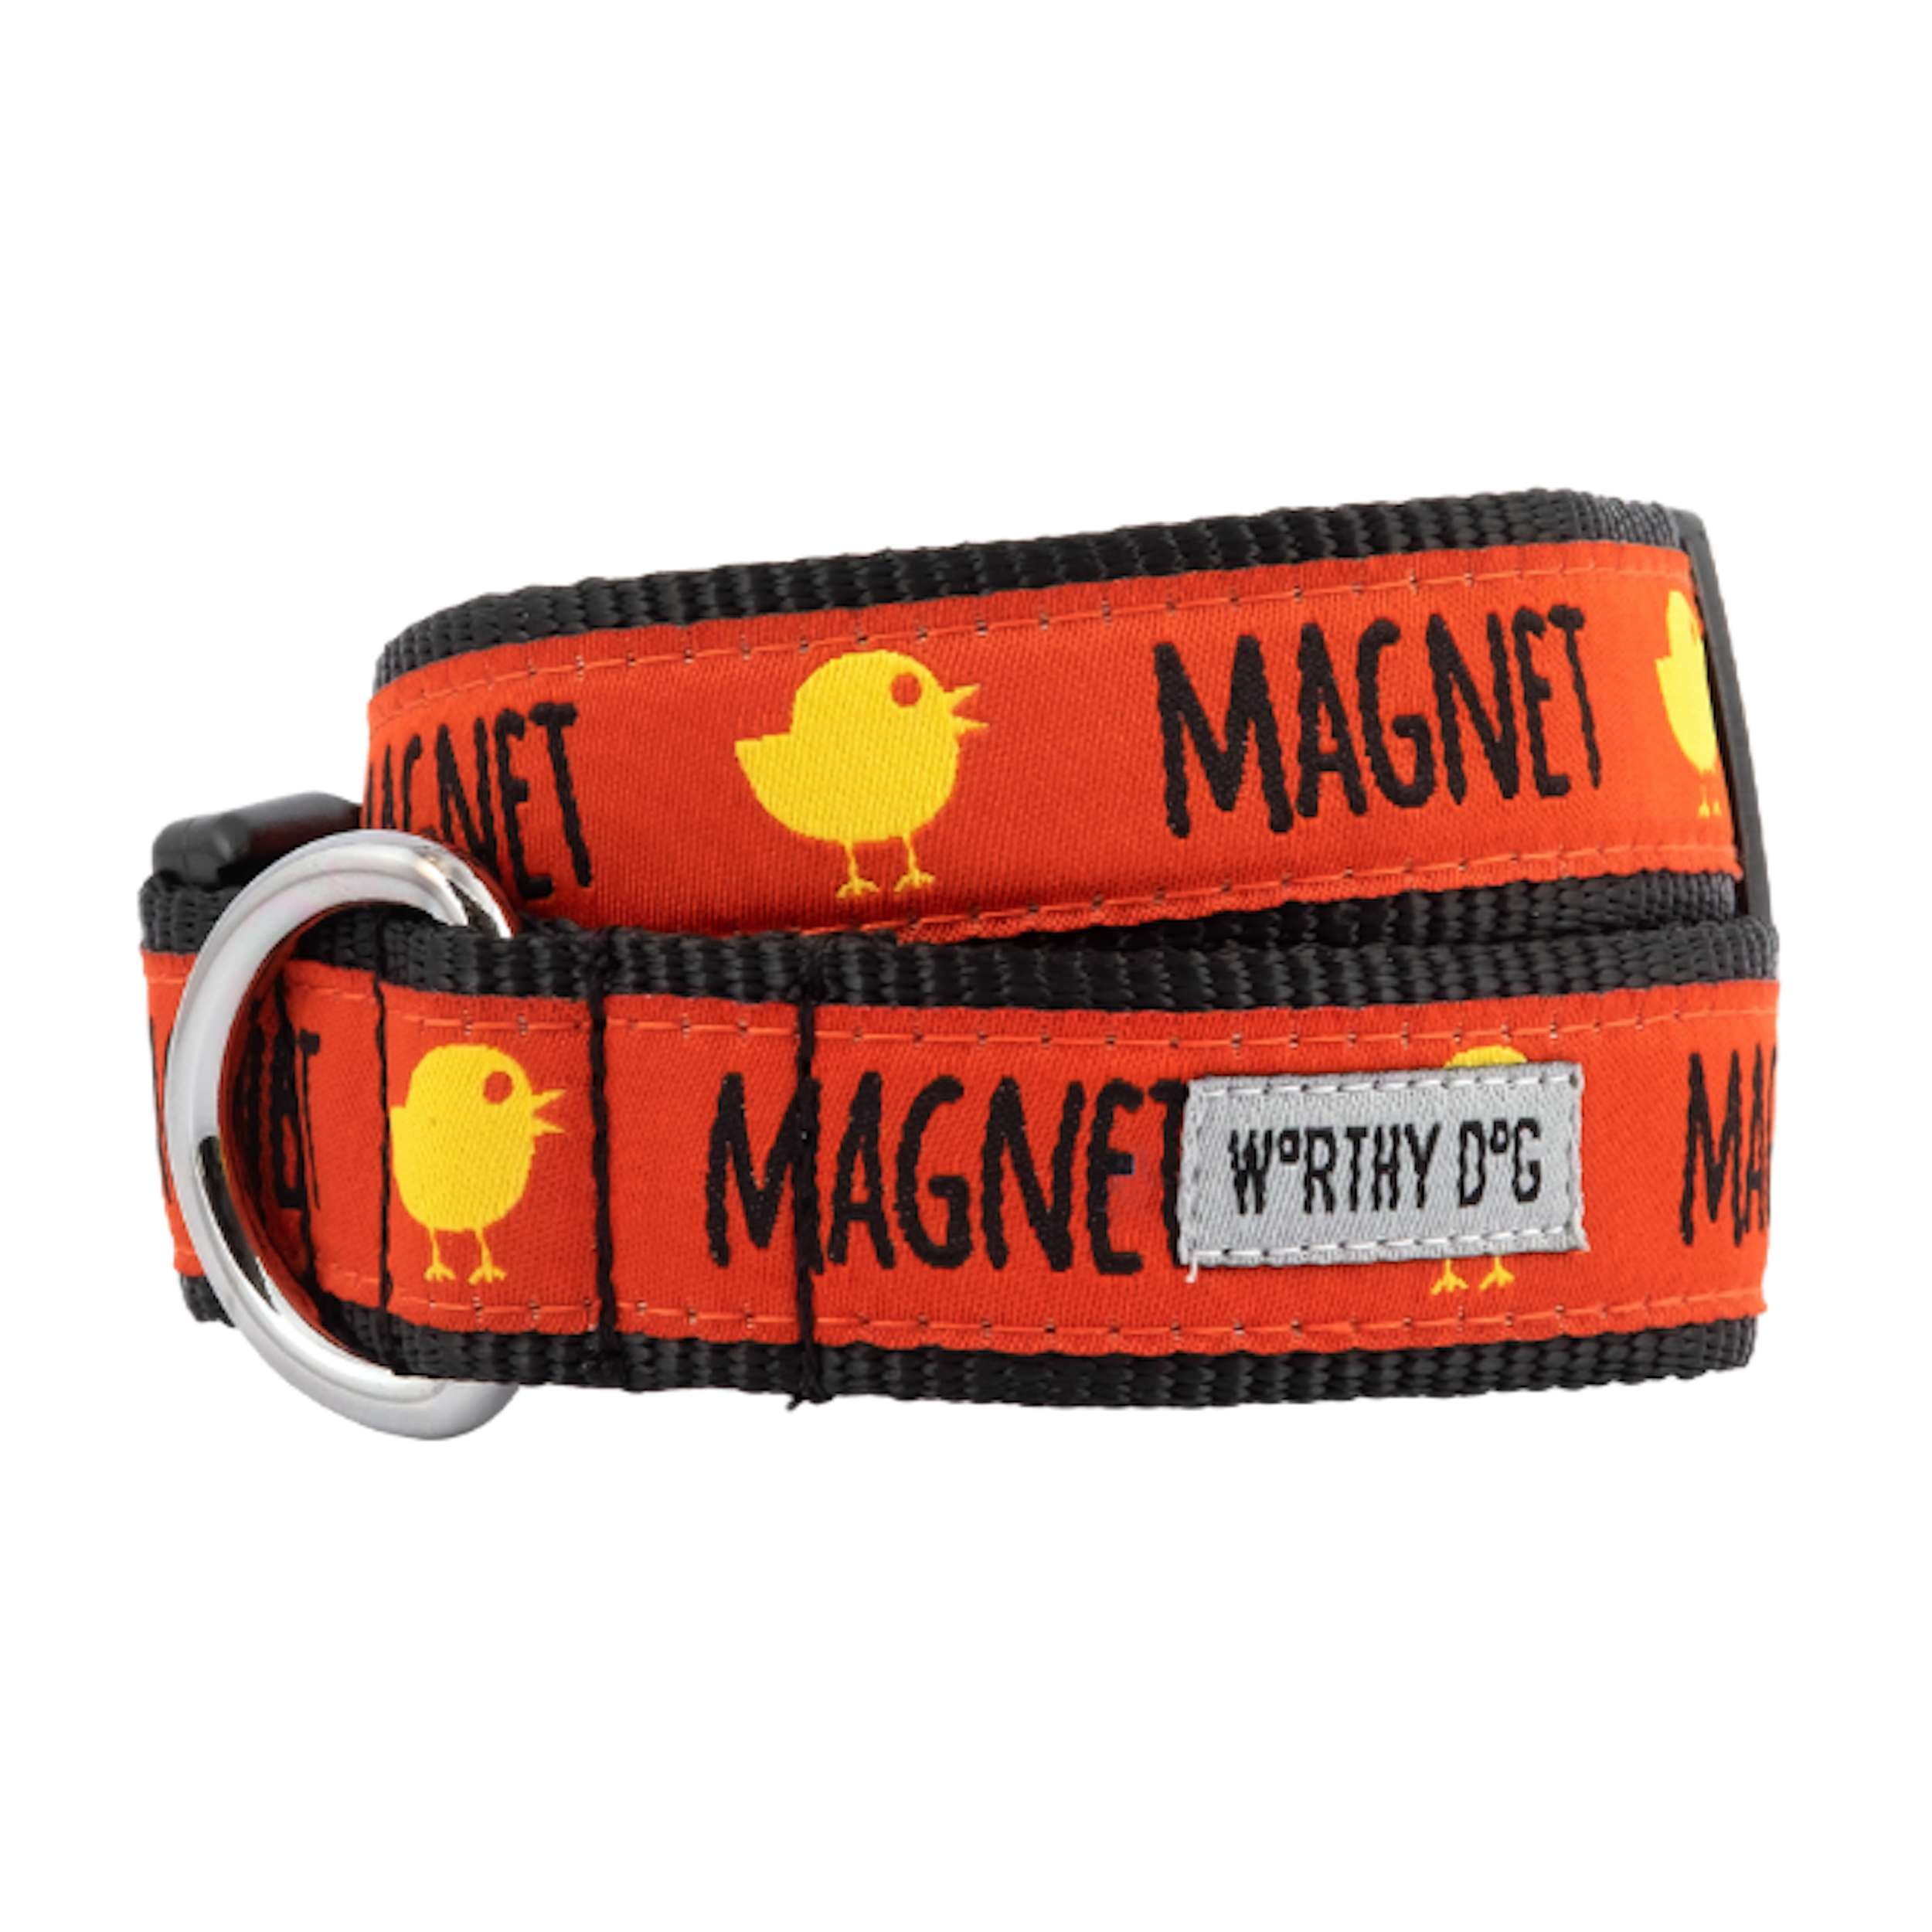 chick-magnet-dog-leash